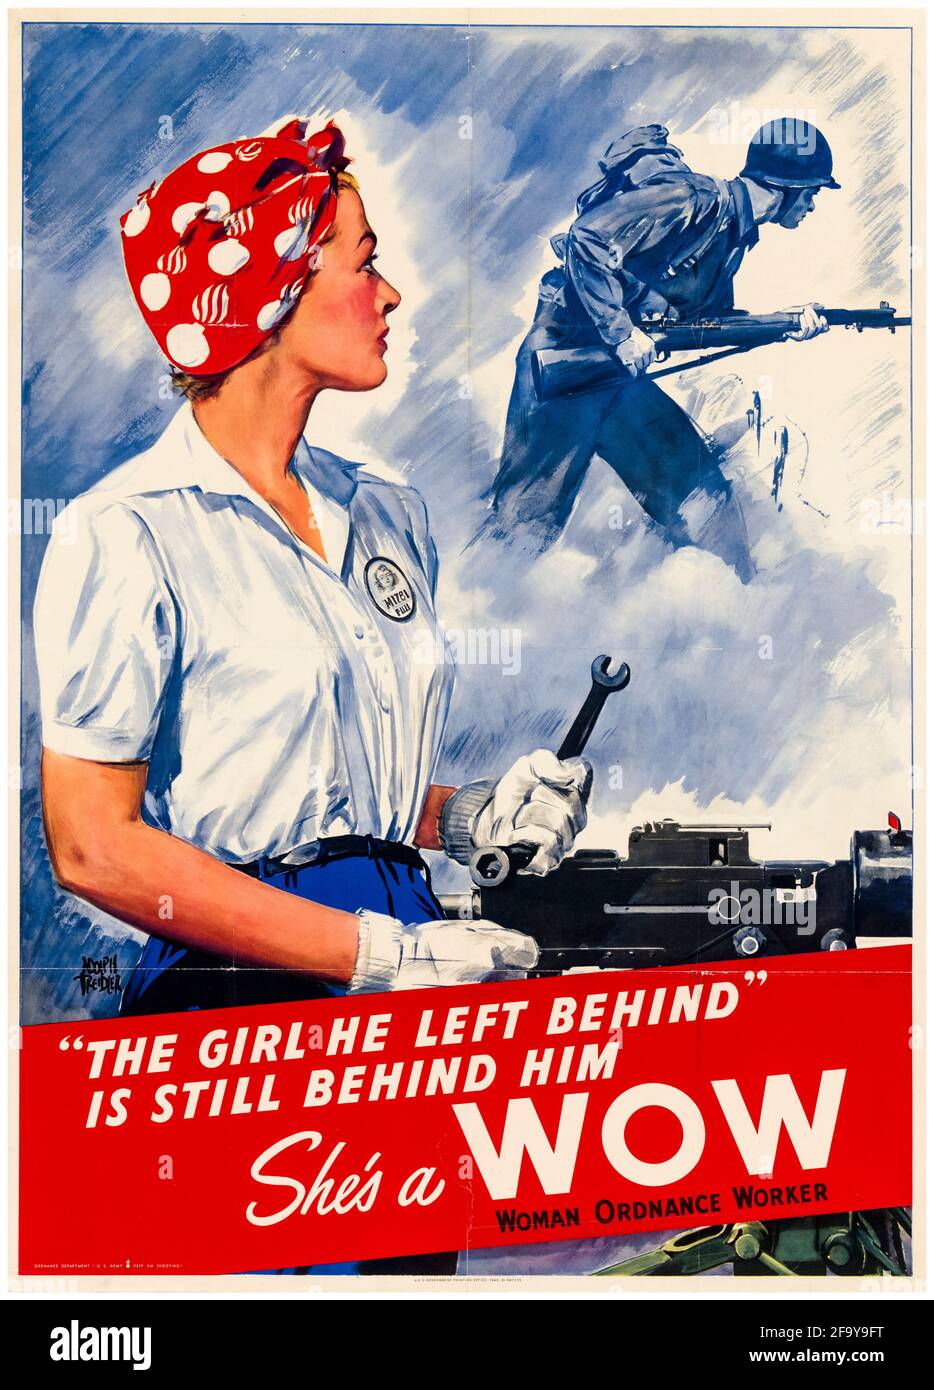 Américaine, affiche de travail de guerre féminine de la Seconde Guerre mondiale, elle est une WOW (femme Ordnance Worker), (femme faisant du travail de fabrication dans une usine), 1942-1945 Banque D'Images